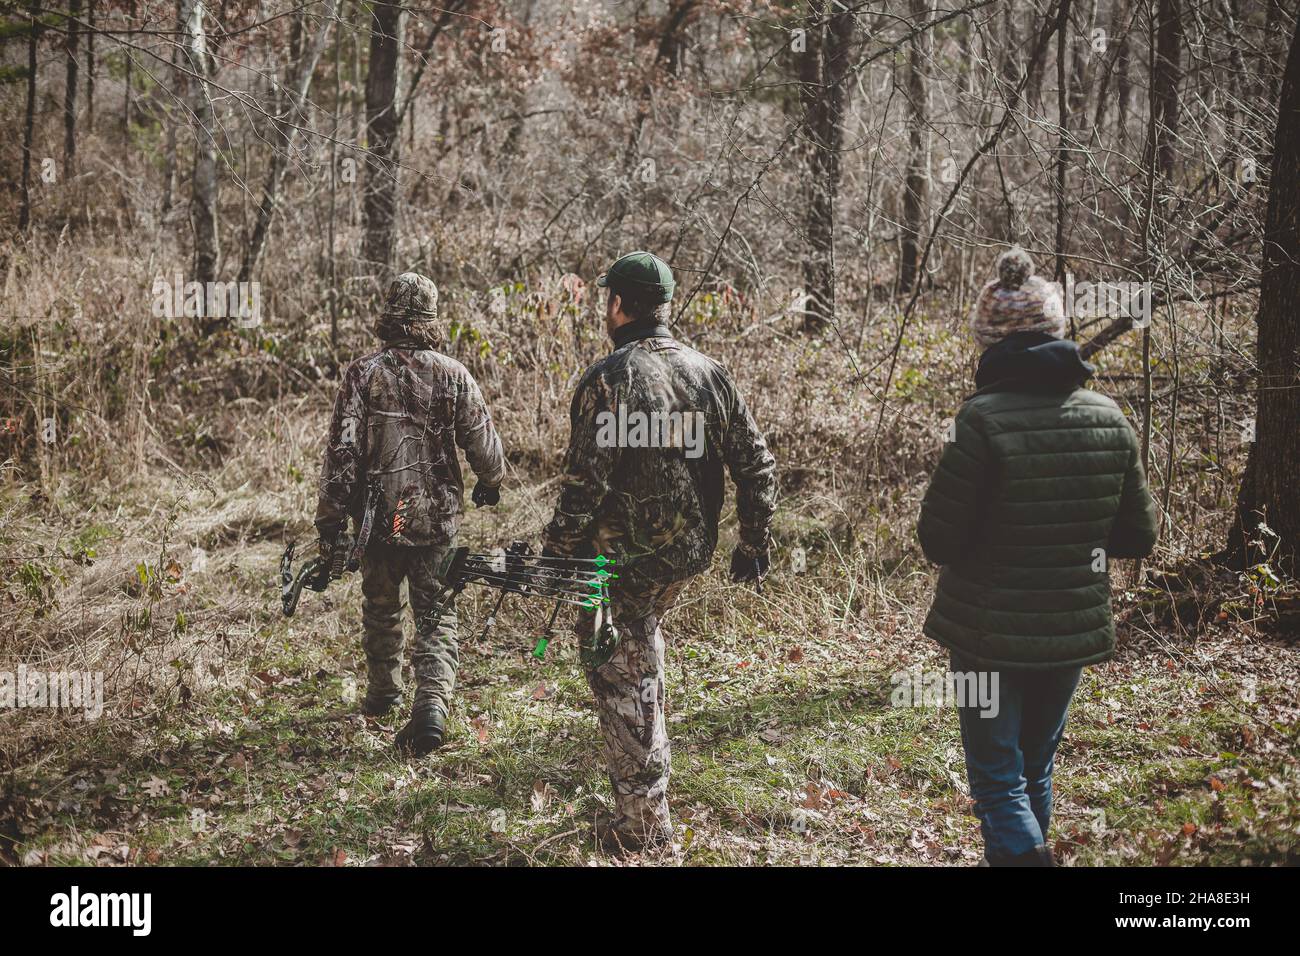 Vater und seine beiden Teenager, die in den Wald gehen, um Hirsche aufzuspüren Stockfoto